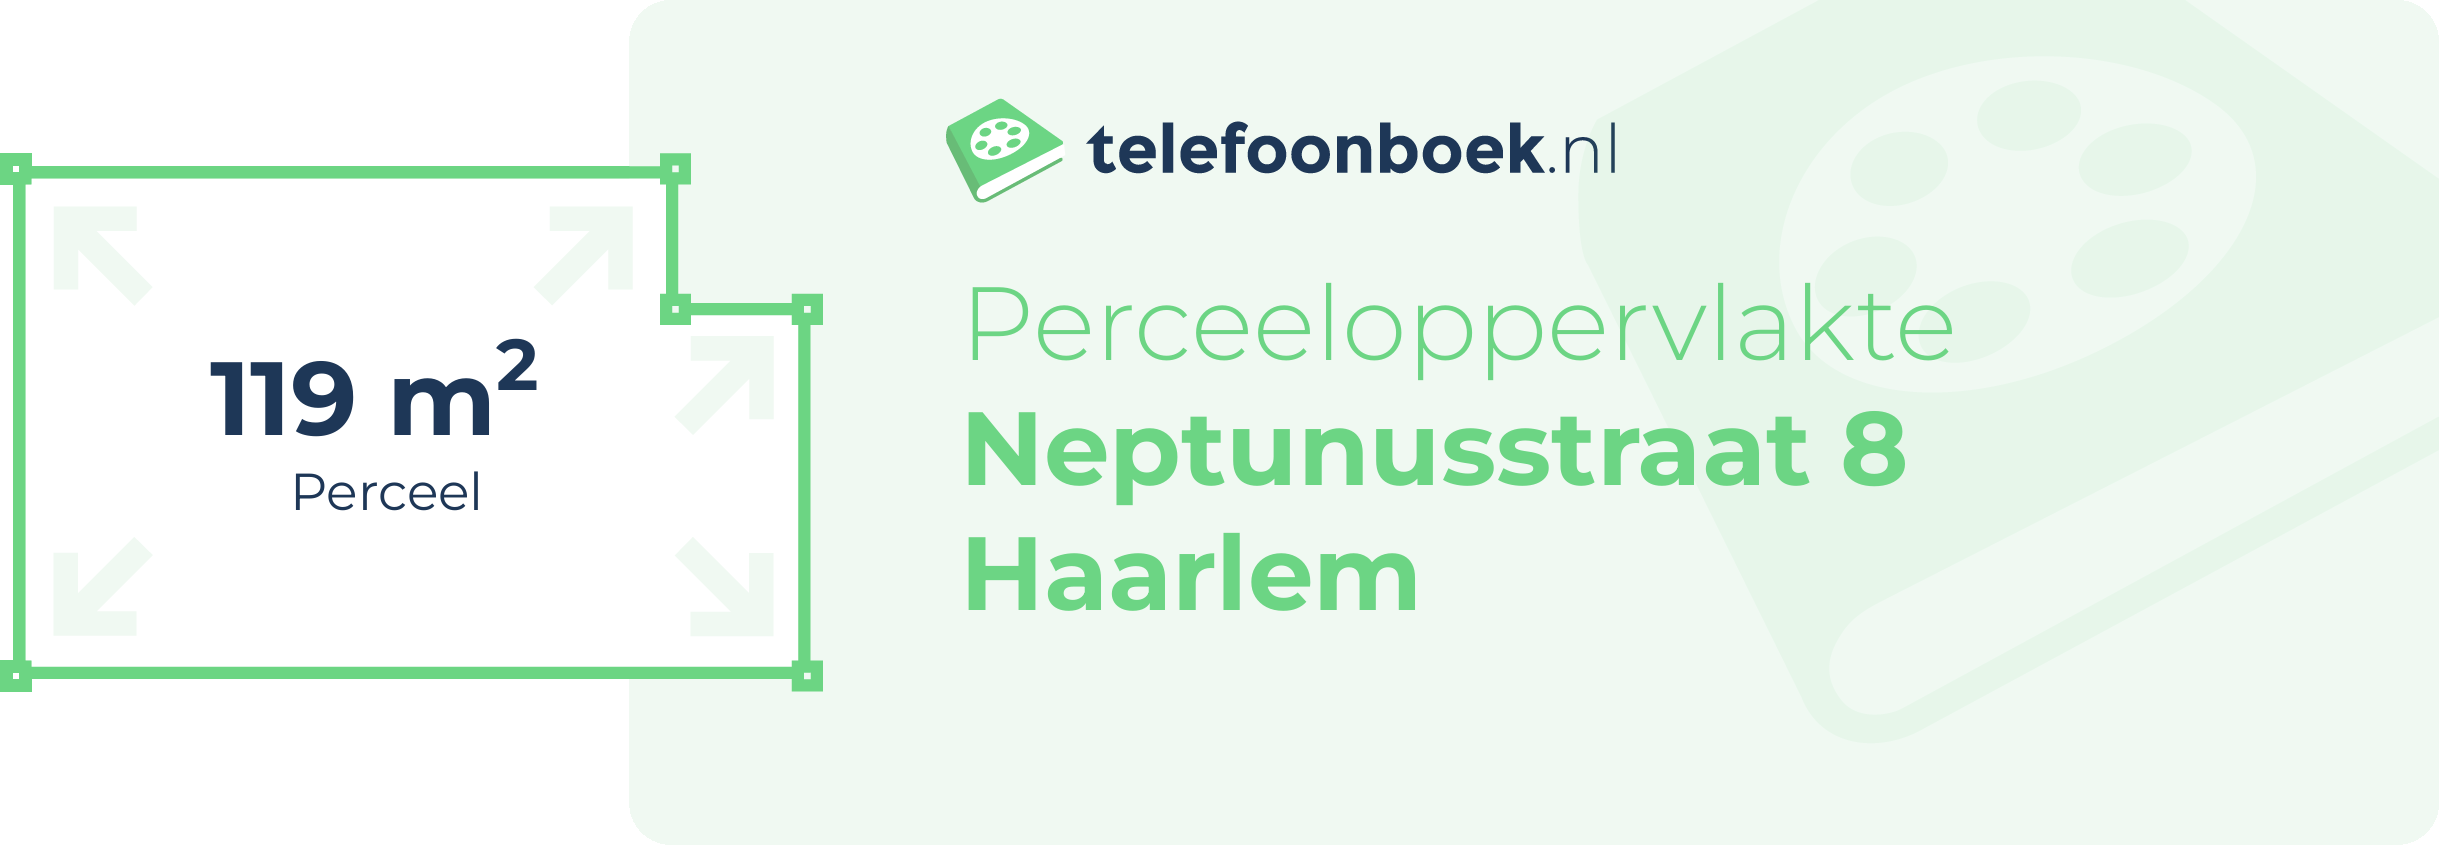 Perceeloppervlakte Neptunusstraat 8 Haarlem